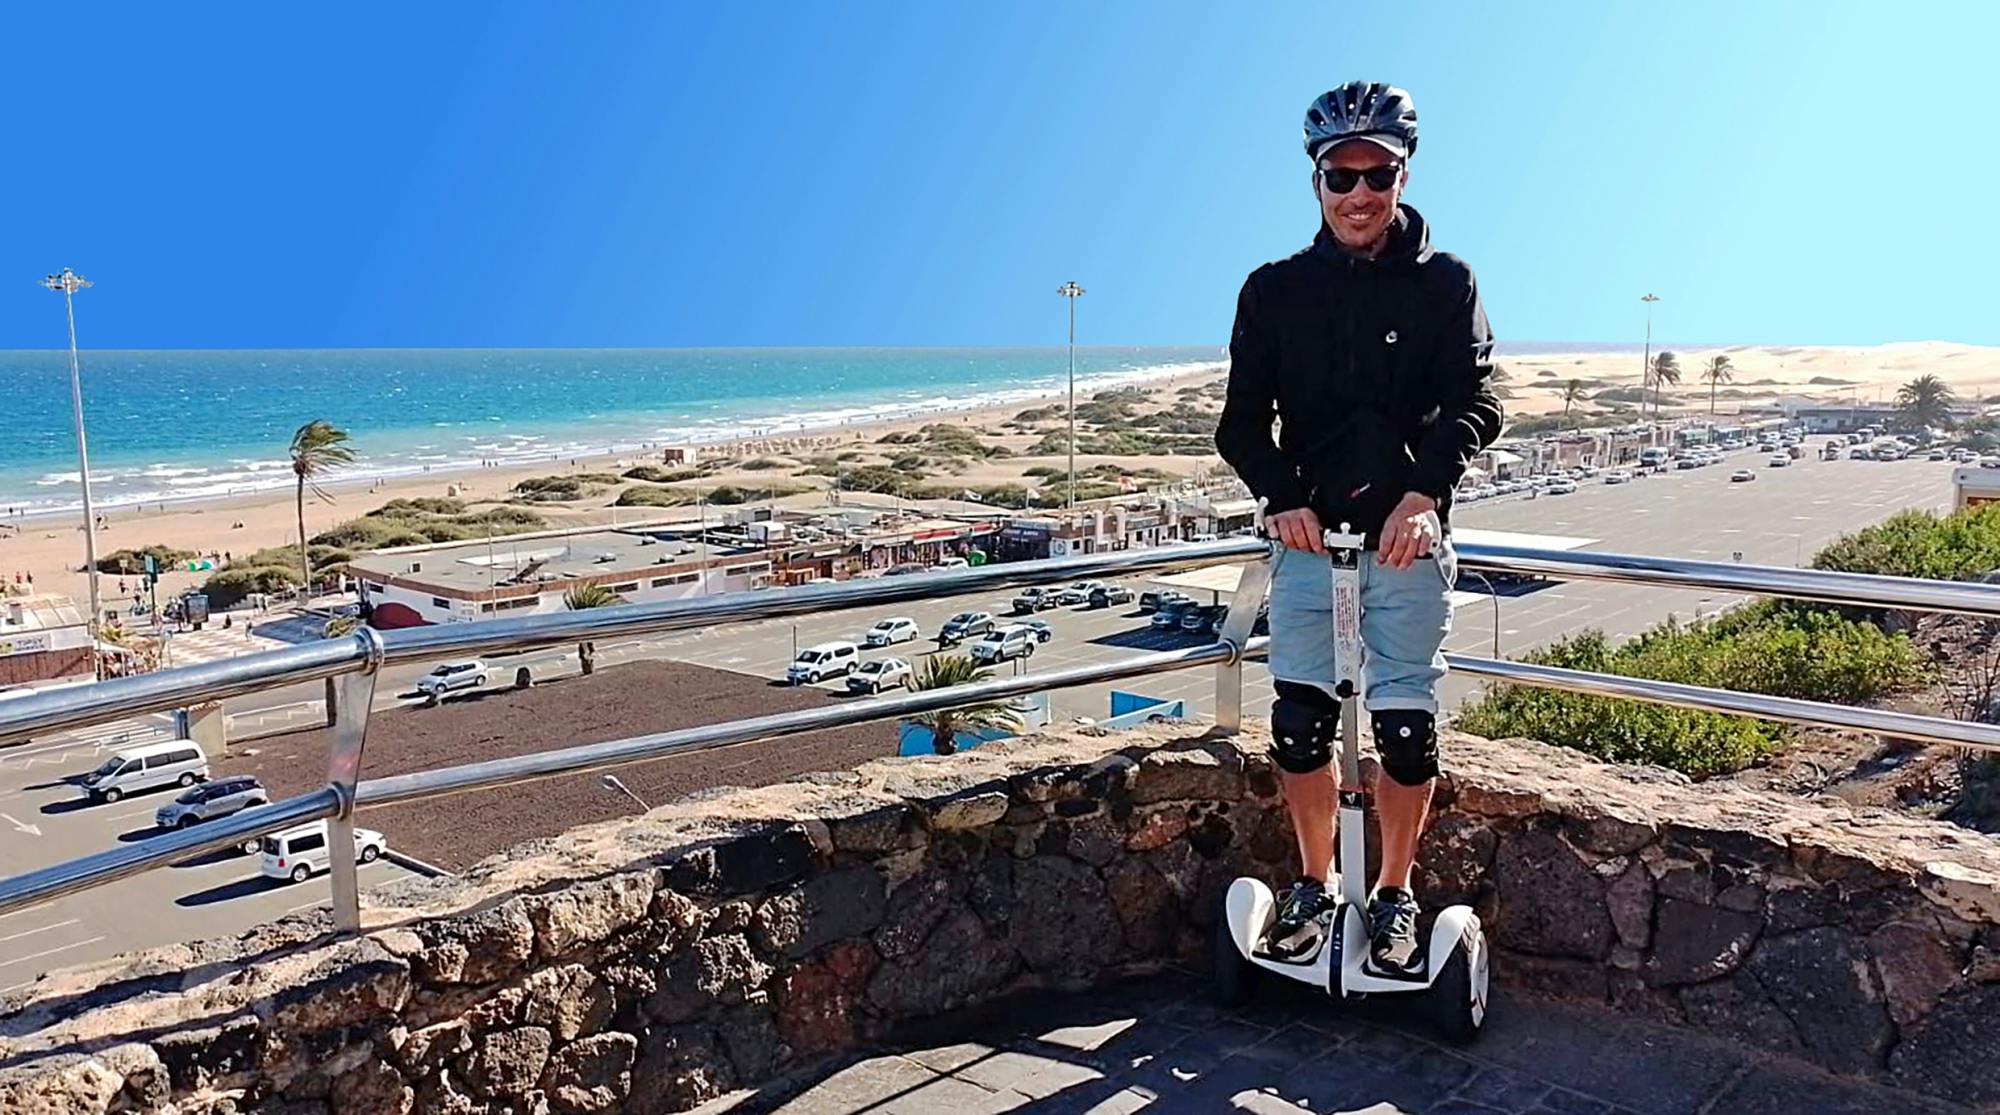 Selbstbalancierende Scooter-Tour durch die Dünen von Maspalomas und Playa del Ingles